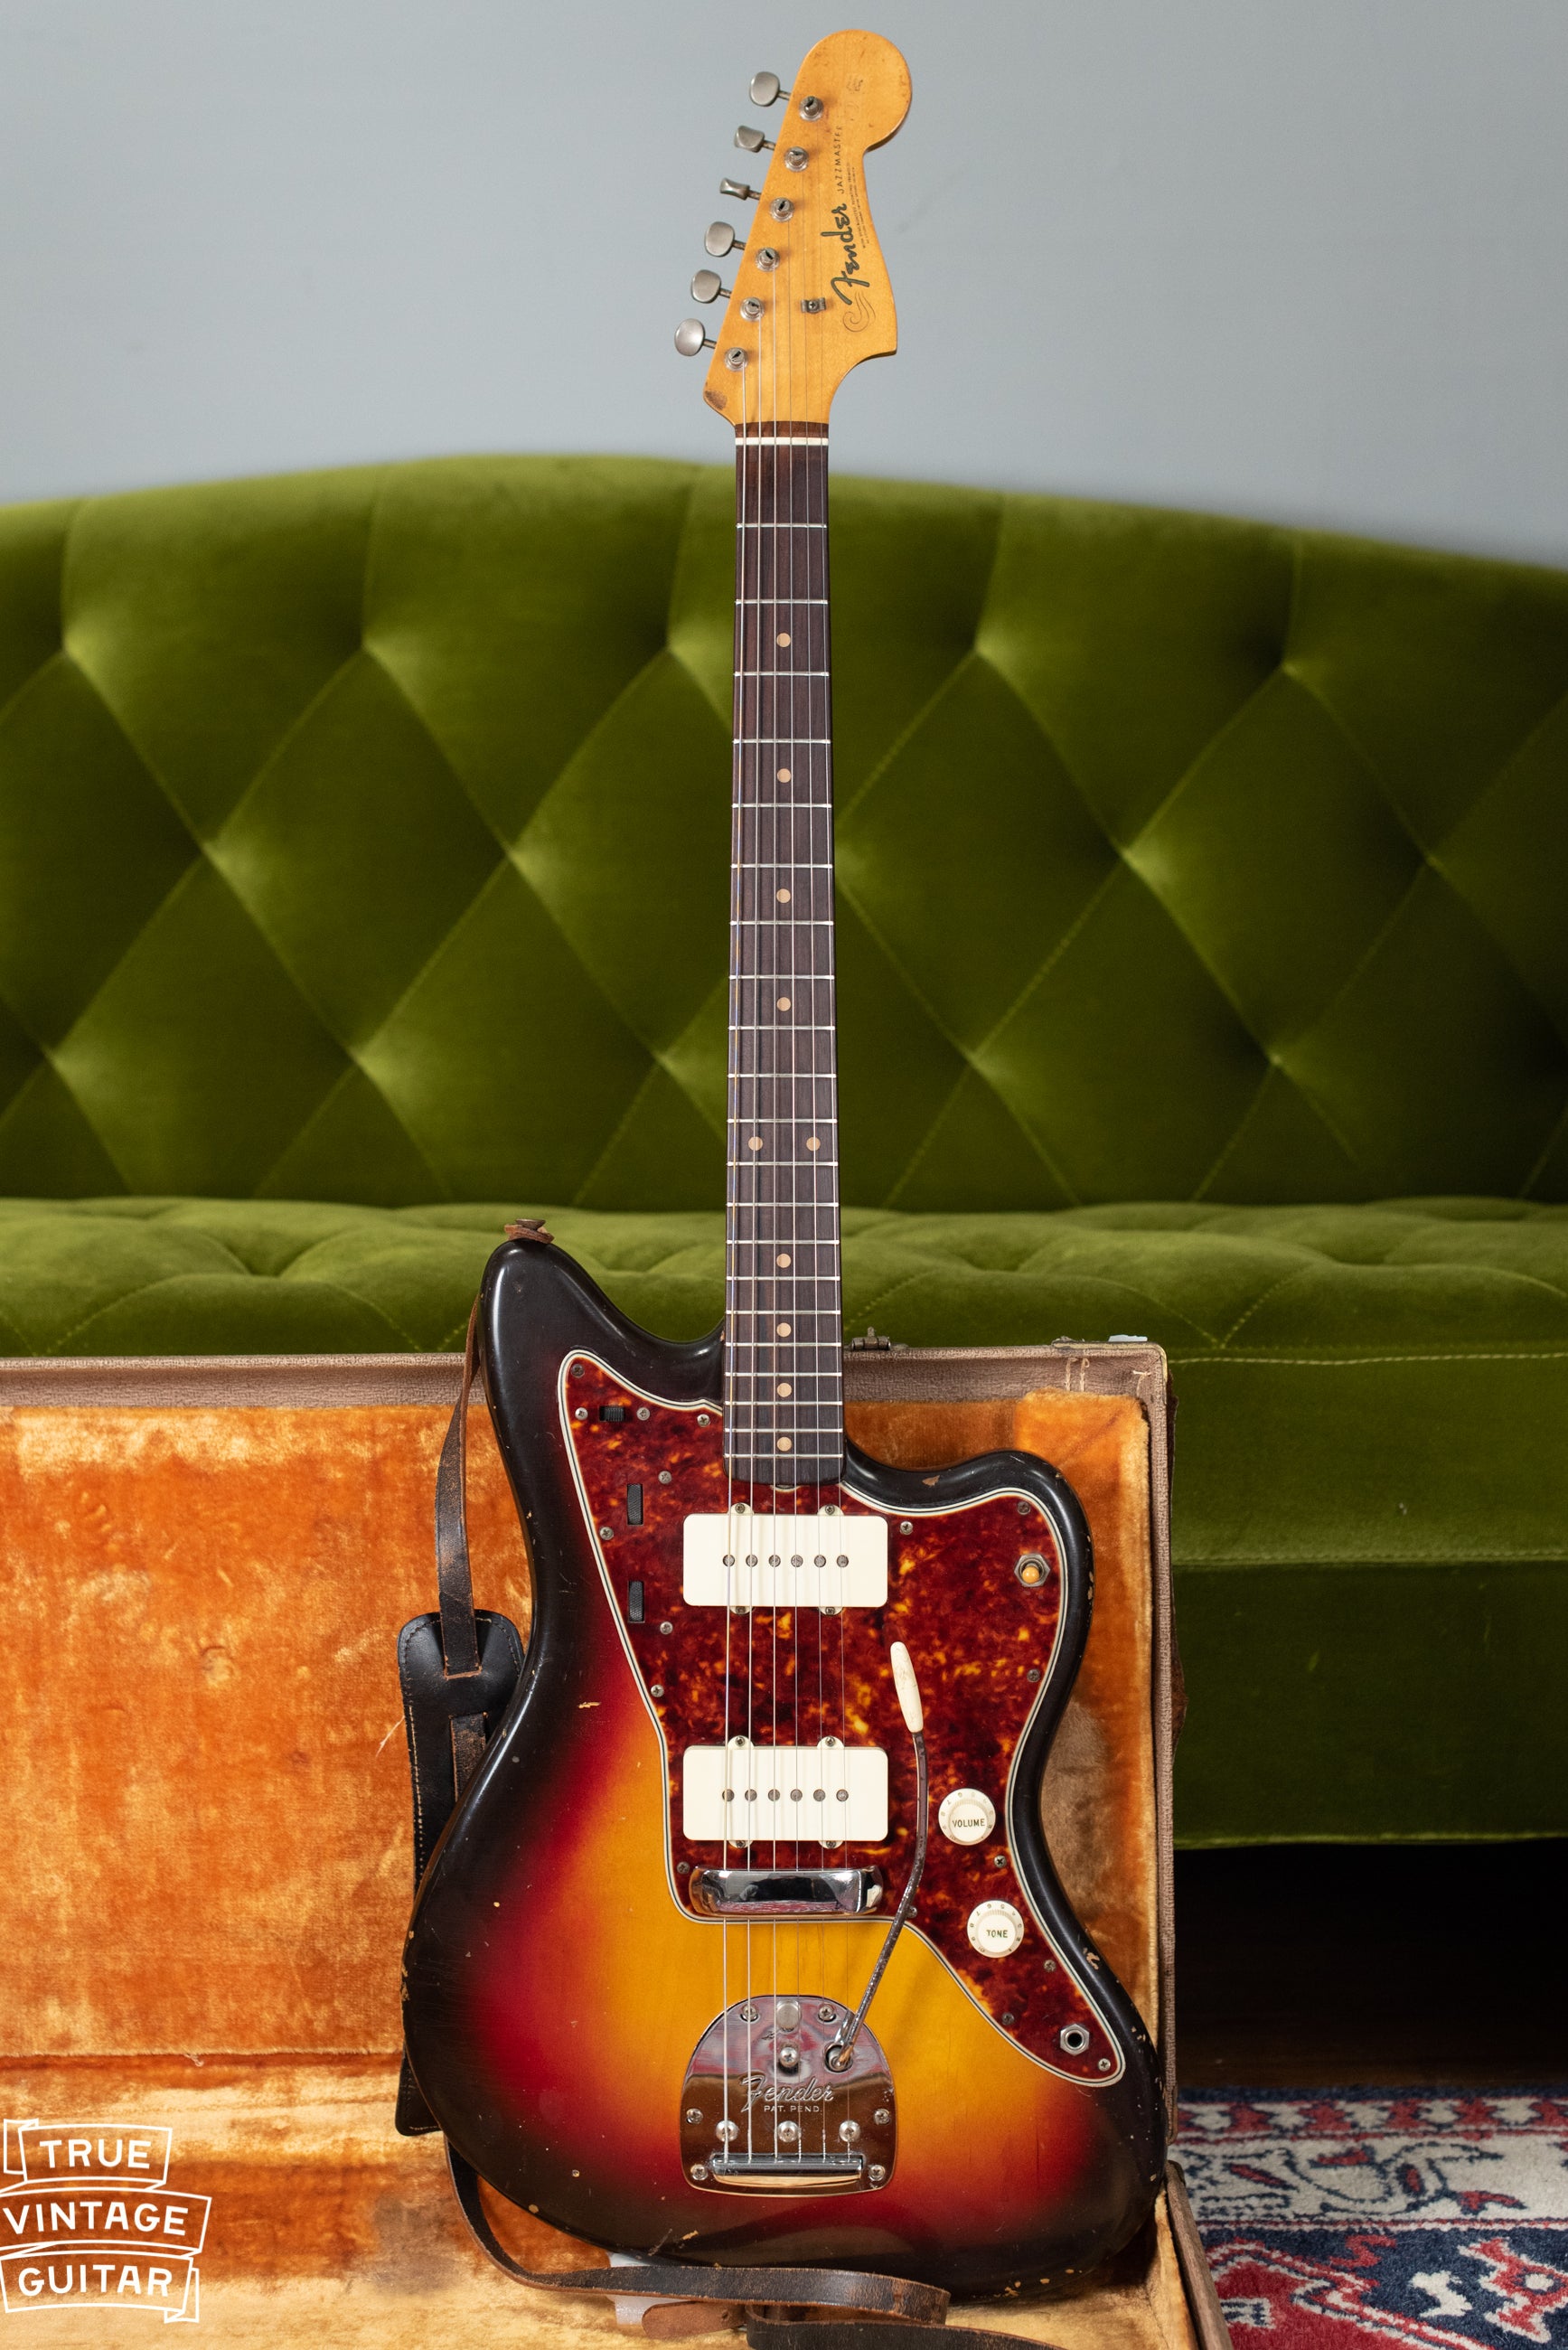 Vintage Fender Jazzmaster guitar